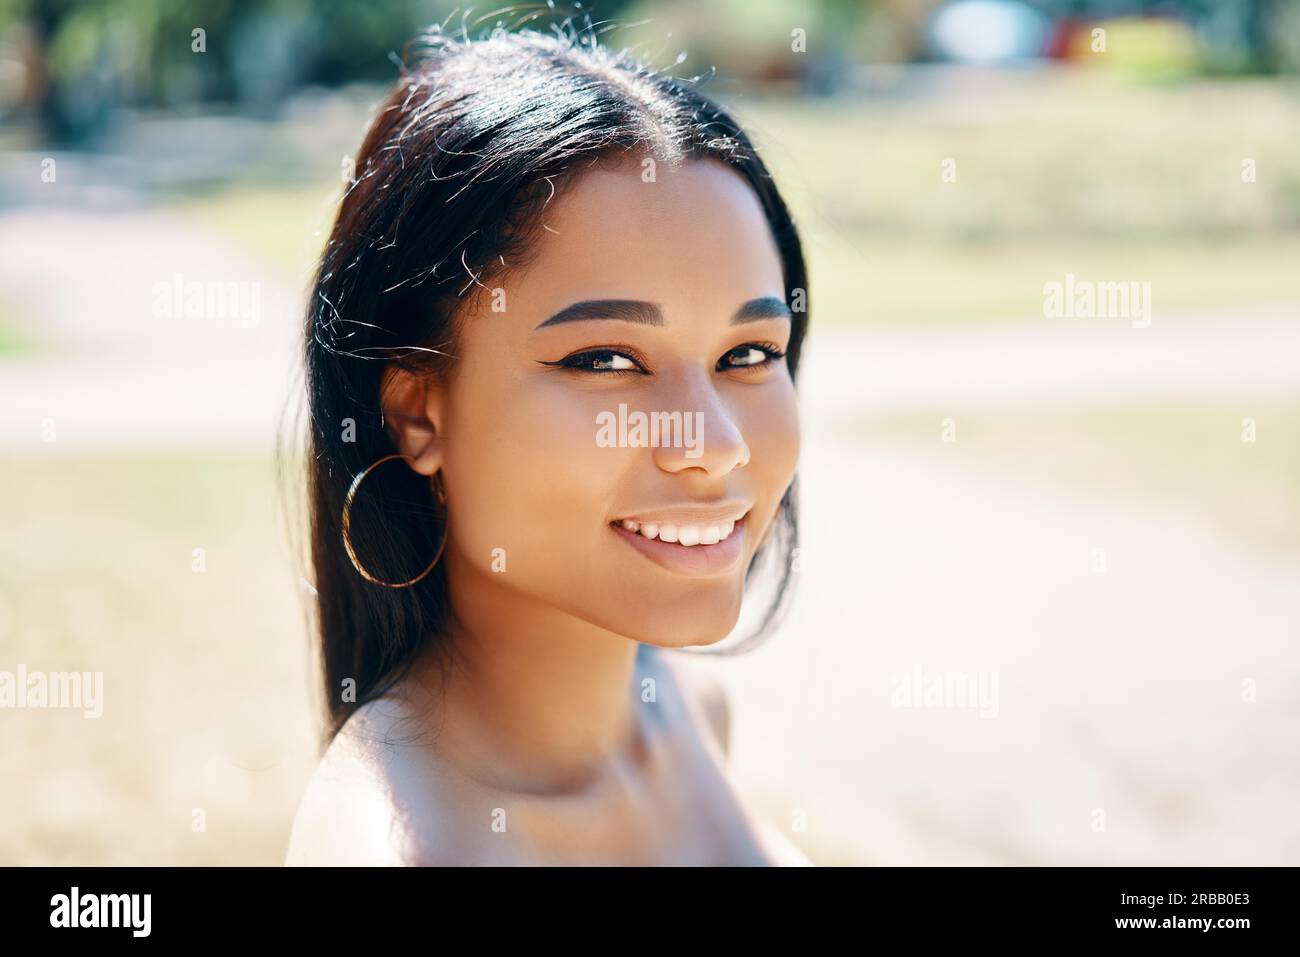 Porträt einer schönen jungen afroamerikanischen Frau lächelnd im freien hautnah Stockfoto